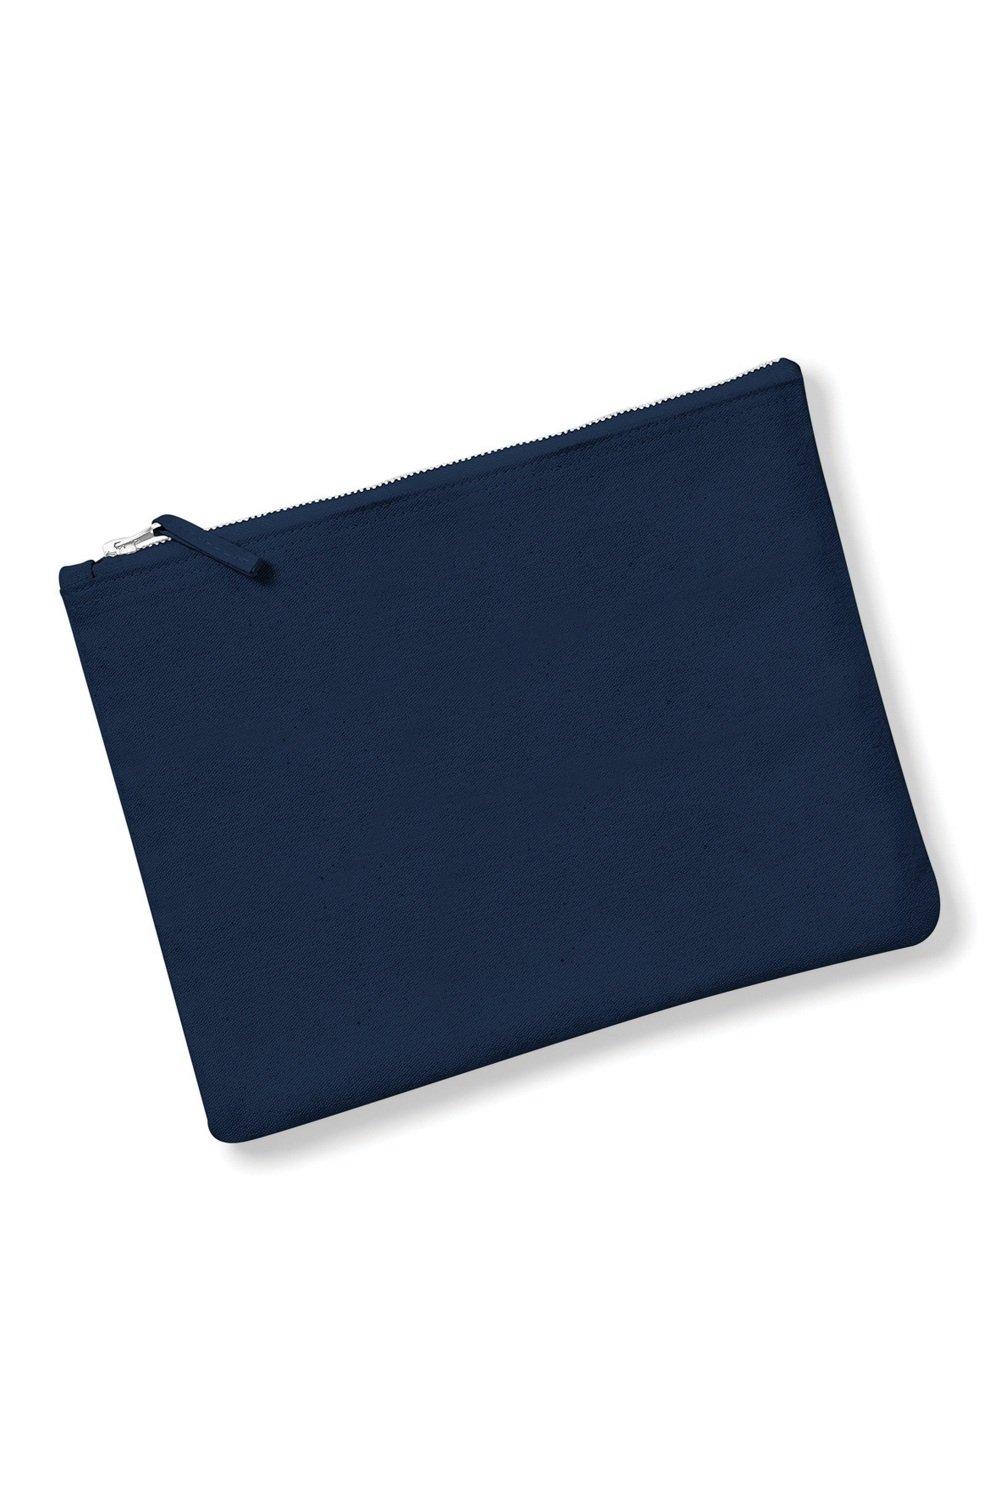 Холщовый футляр для аксессуаров (2 шт.) Westford Mill, темно-синий 200 шт упаковка бумажные наклейки в винтажном стиле